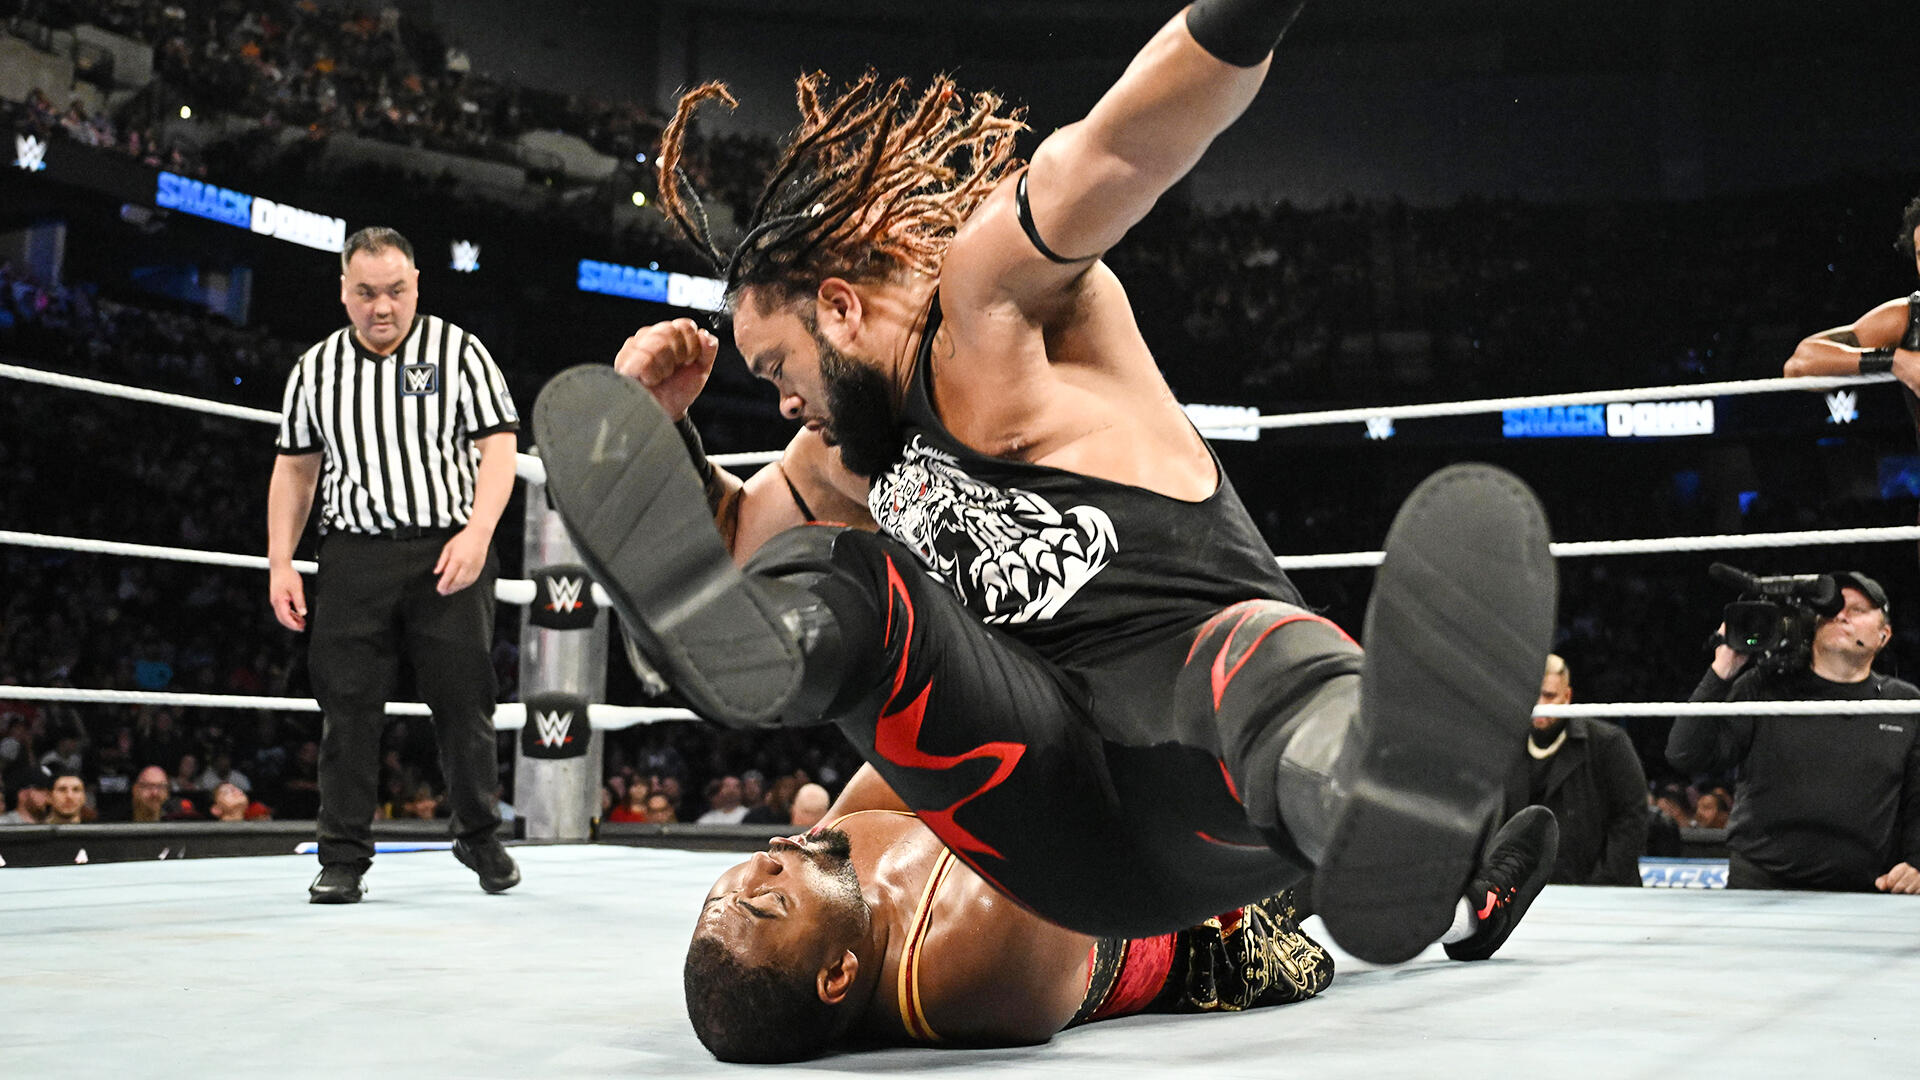 Jacob Fatu & Tama Tonga obtienen una oportunidad contra DIY por el Campeonato en Parejas de WWE